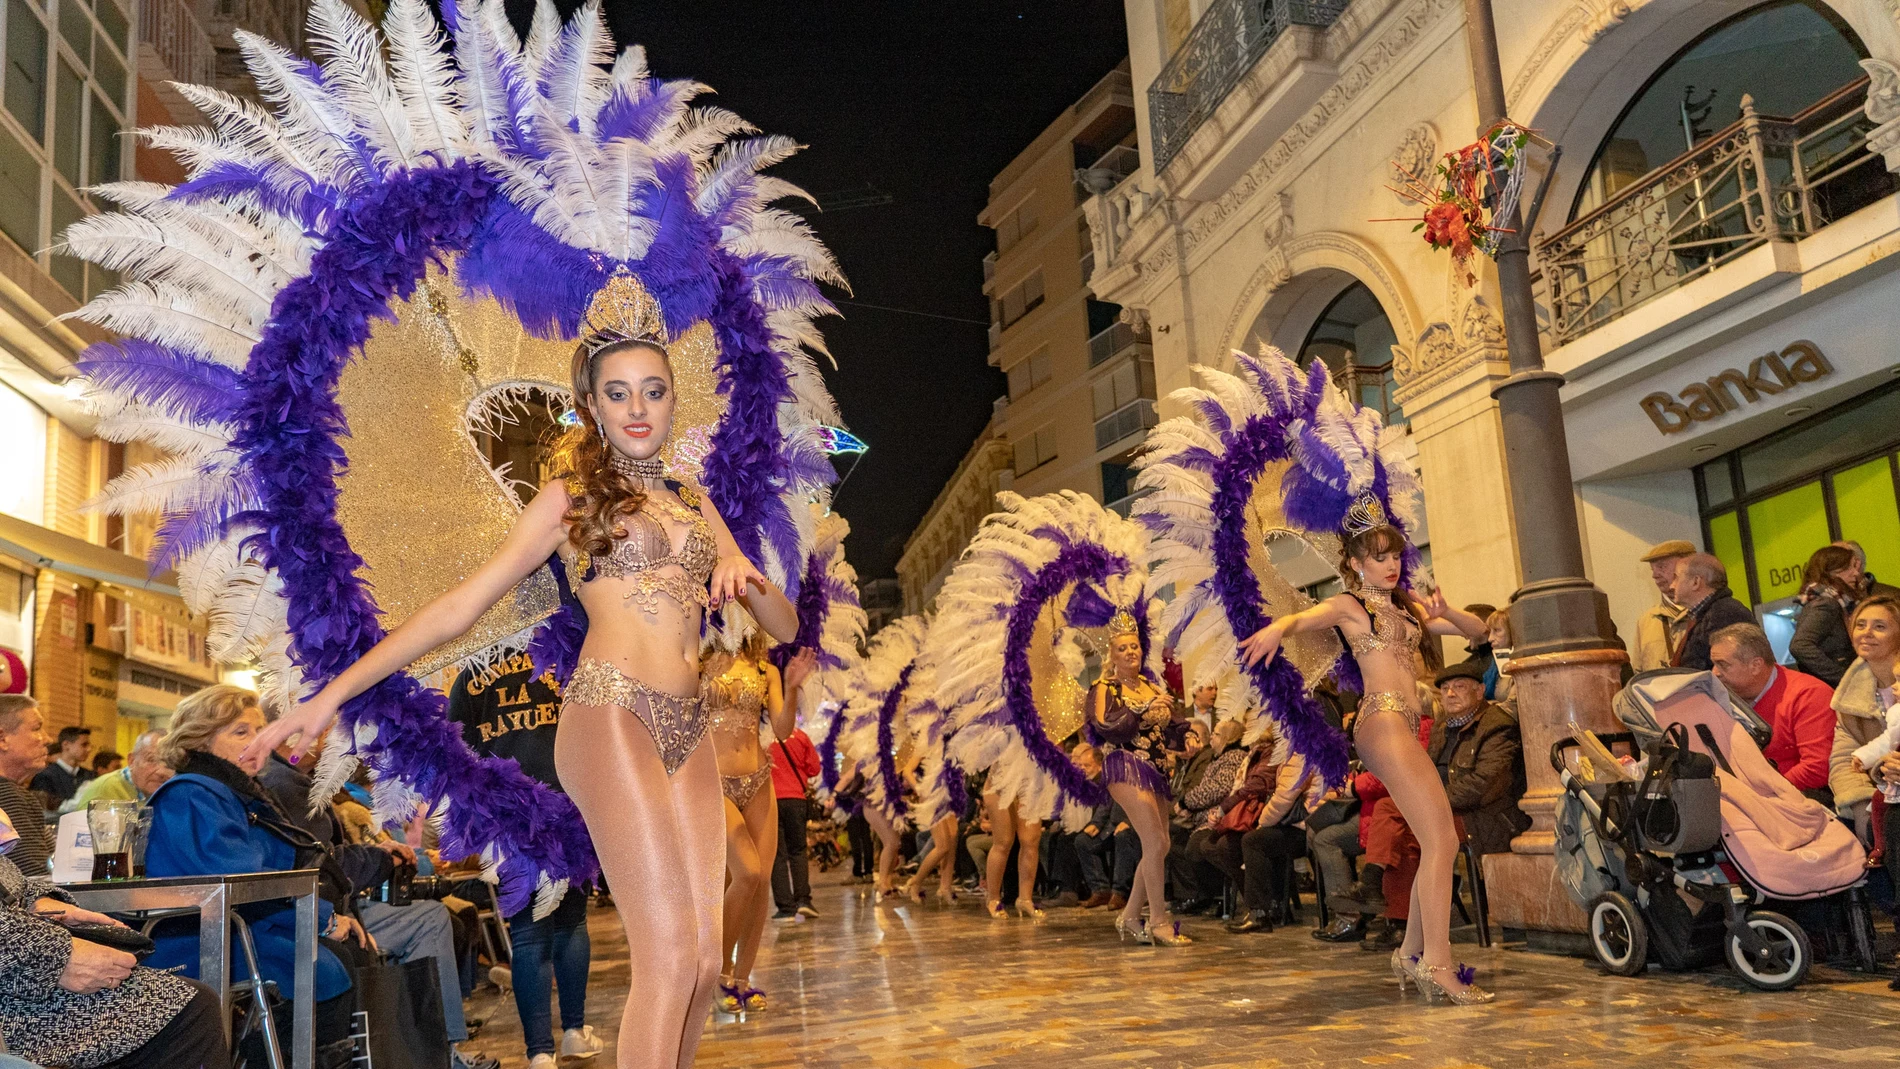 Los imponentes desfiles y pasacalles del Carnaval inundarán ciudades como Cartagena, Águilas o Murcia durante estas semanas